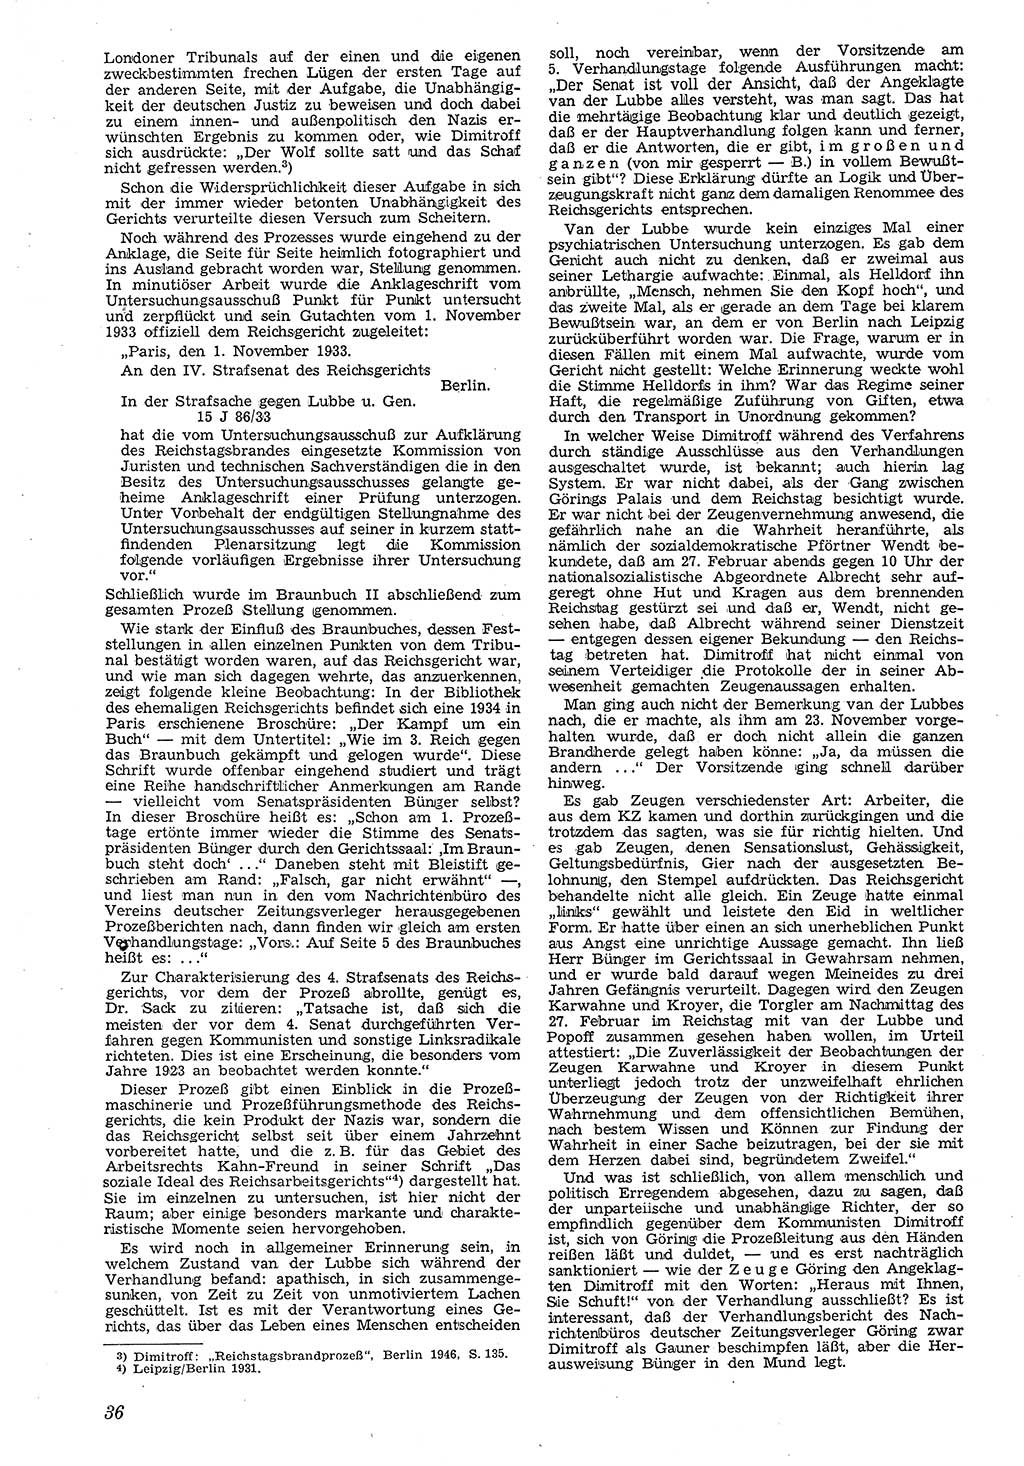 Neue Justiz (NJ), Zeitschrift für Recht und Rechtswissenschaft [Deutsche Demokratische Republik (DDR)], 4. Jahrgang 1950, Seite 36 (NJ DDR 1950, S. 36)